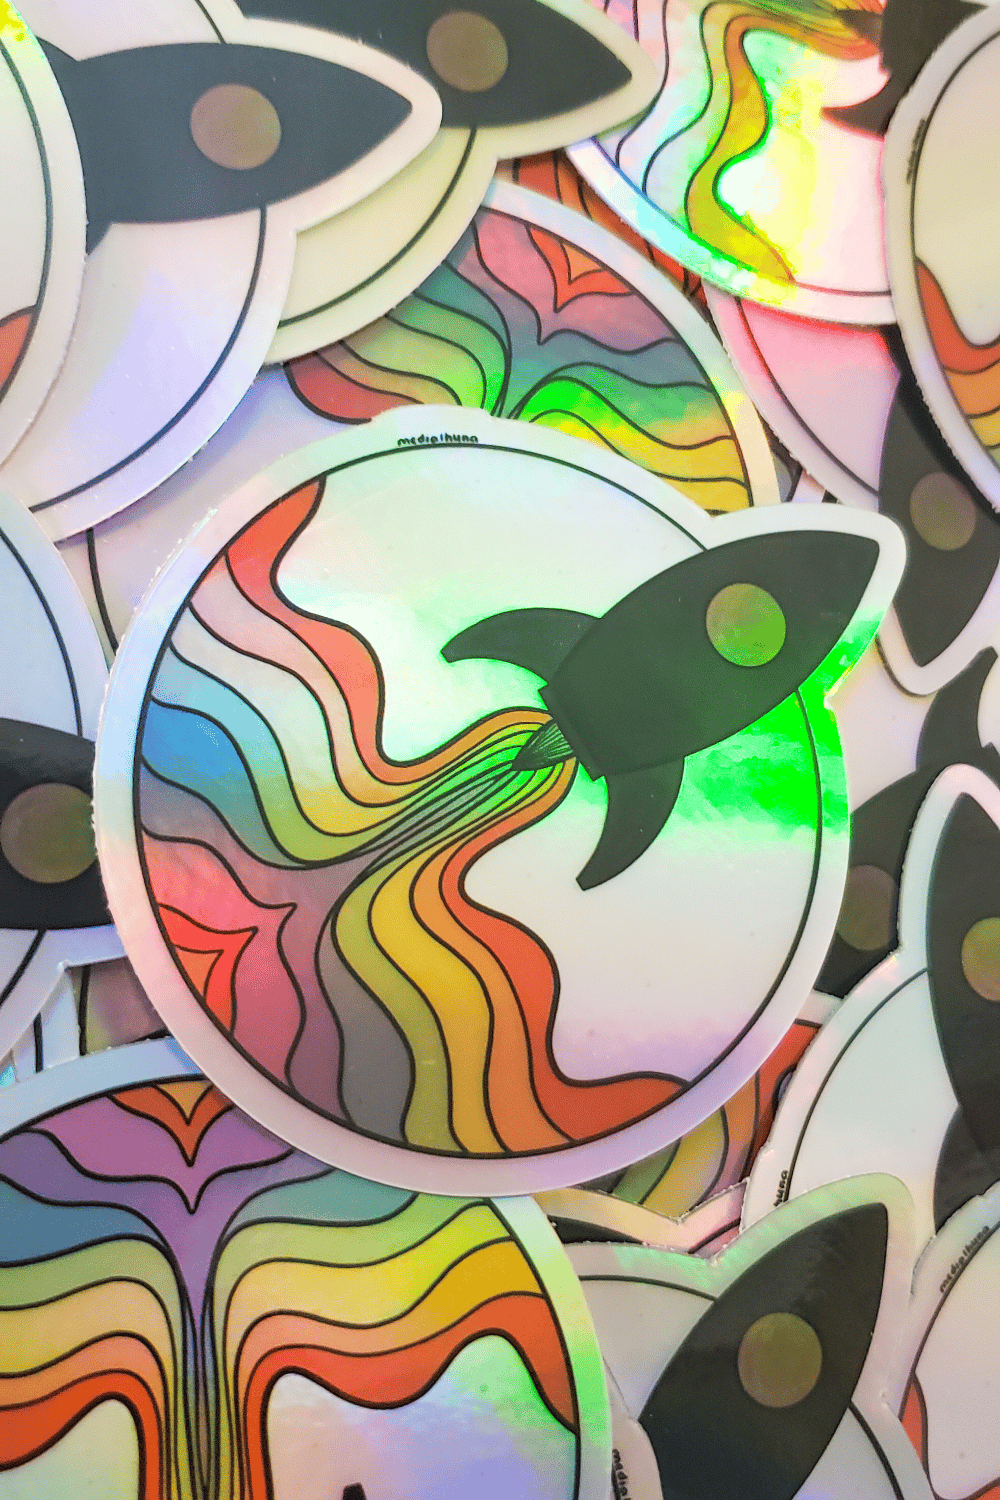 Lanzamiento Colorido - Sticker